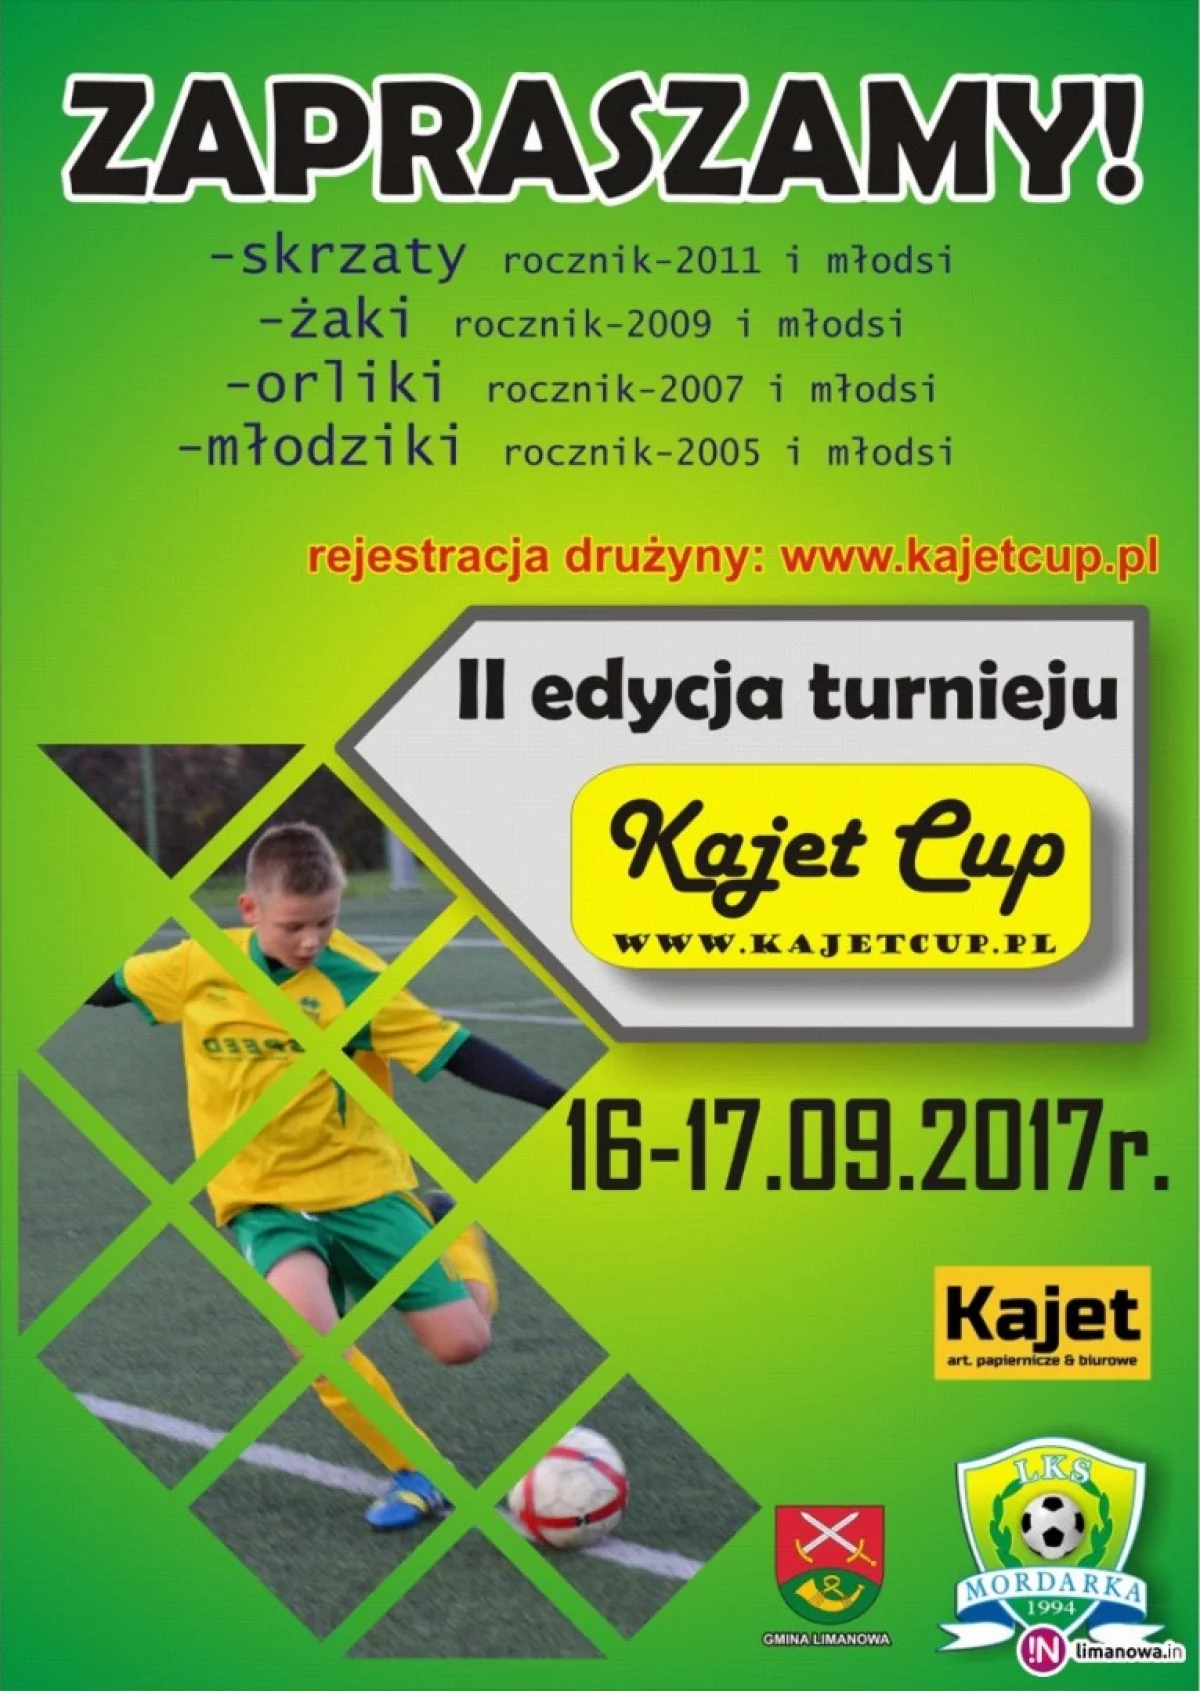 II Kajet Cup 2017 – turniej piłki nożnej pod patronatem Wójta Gminy Limanowa